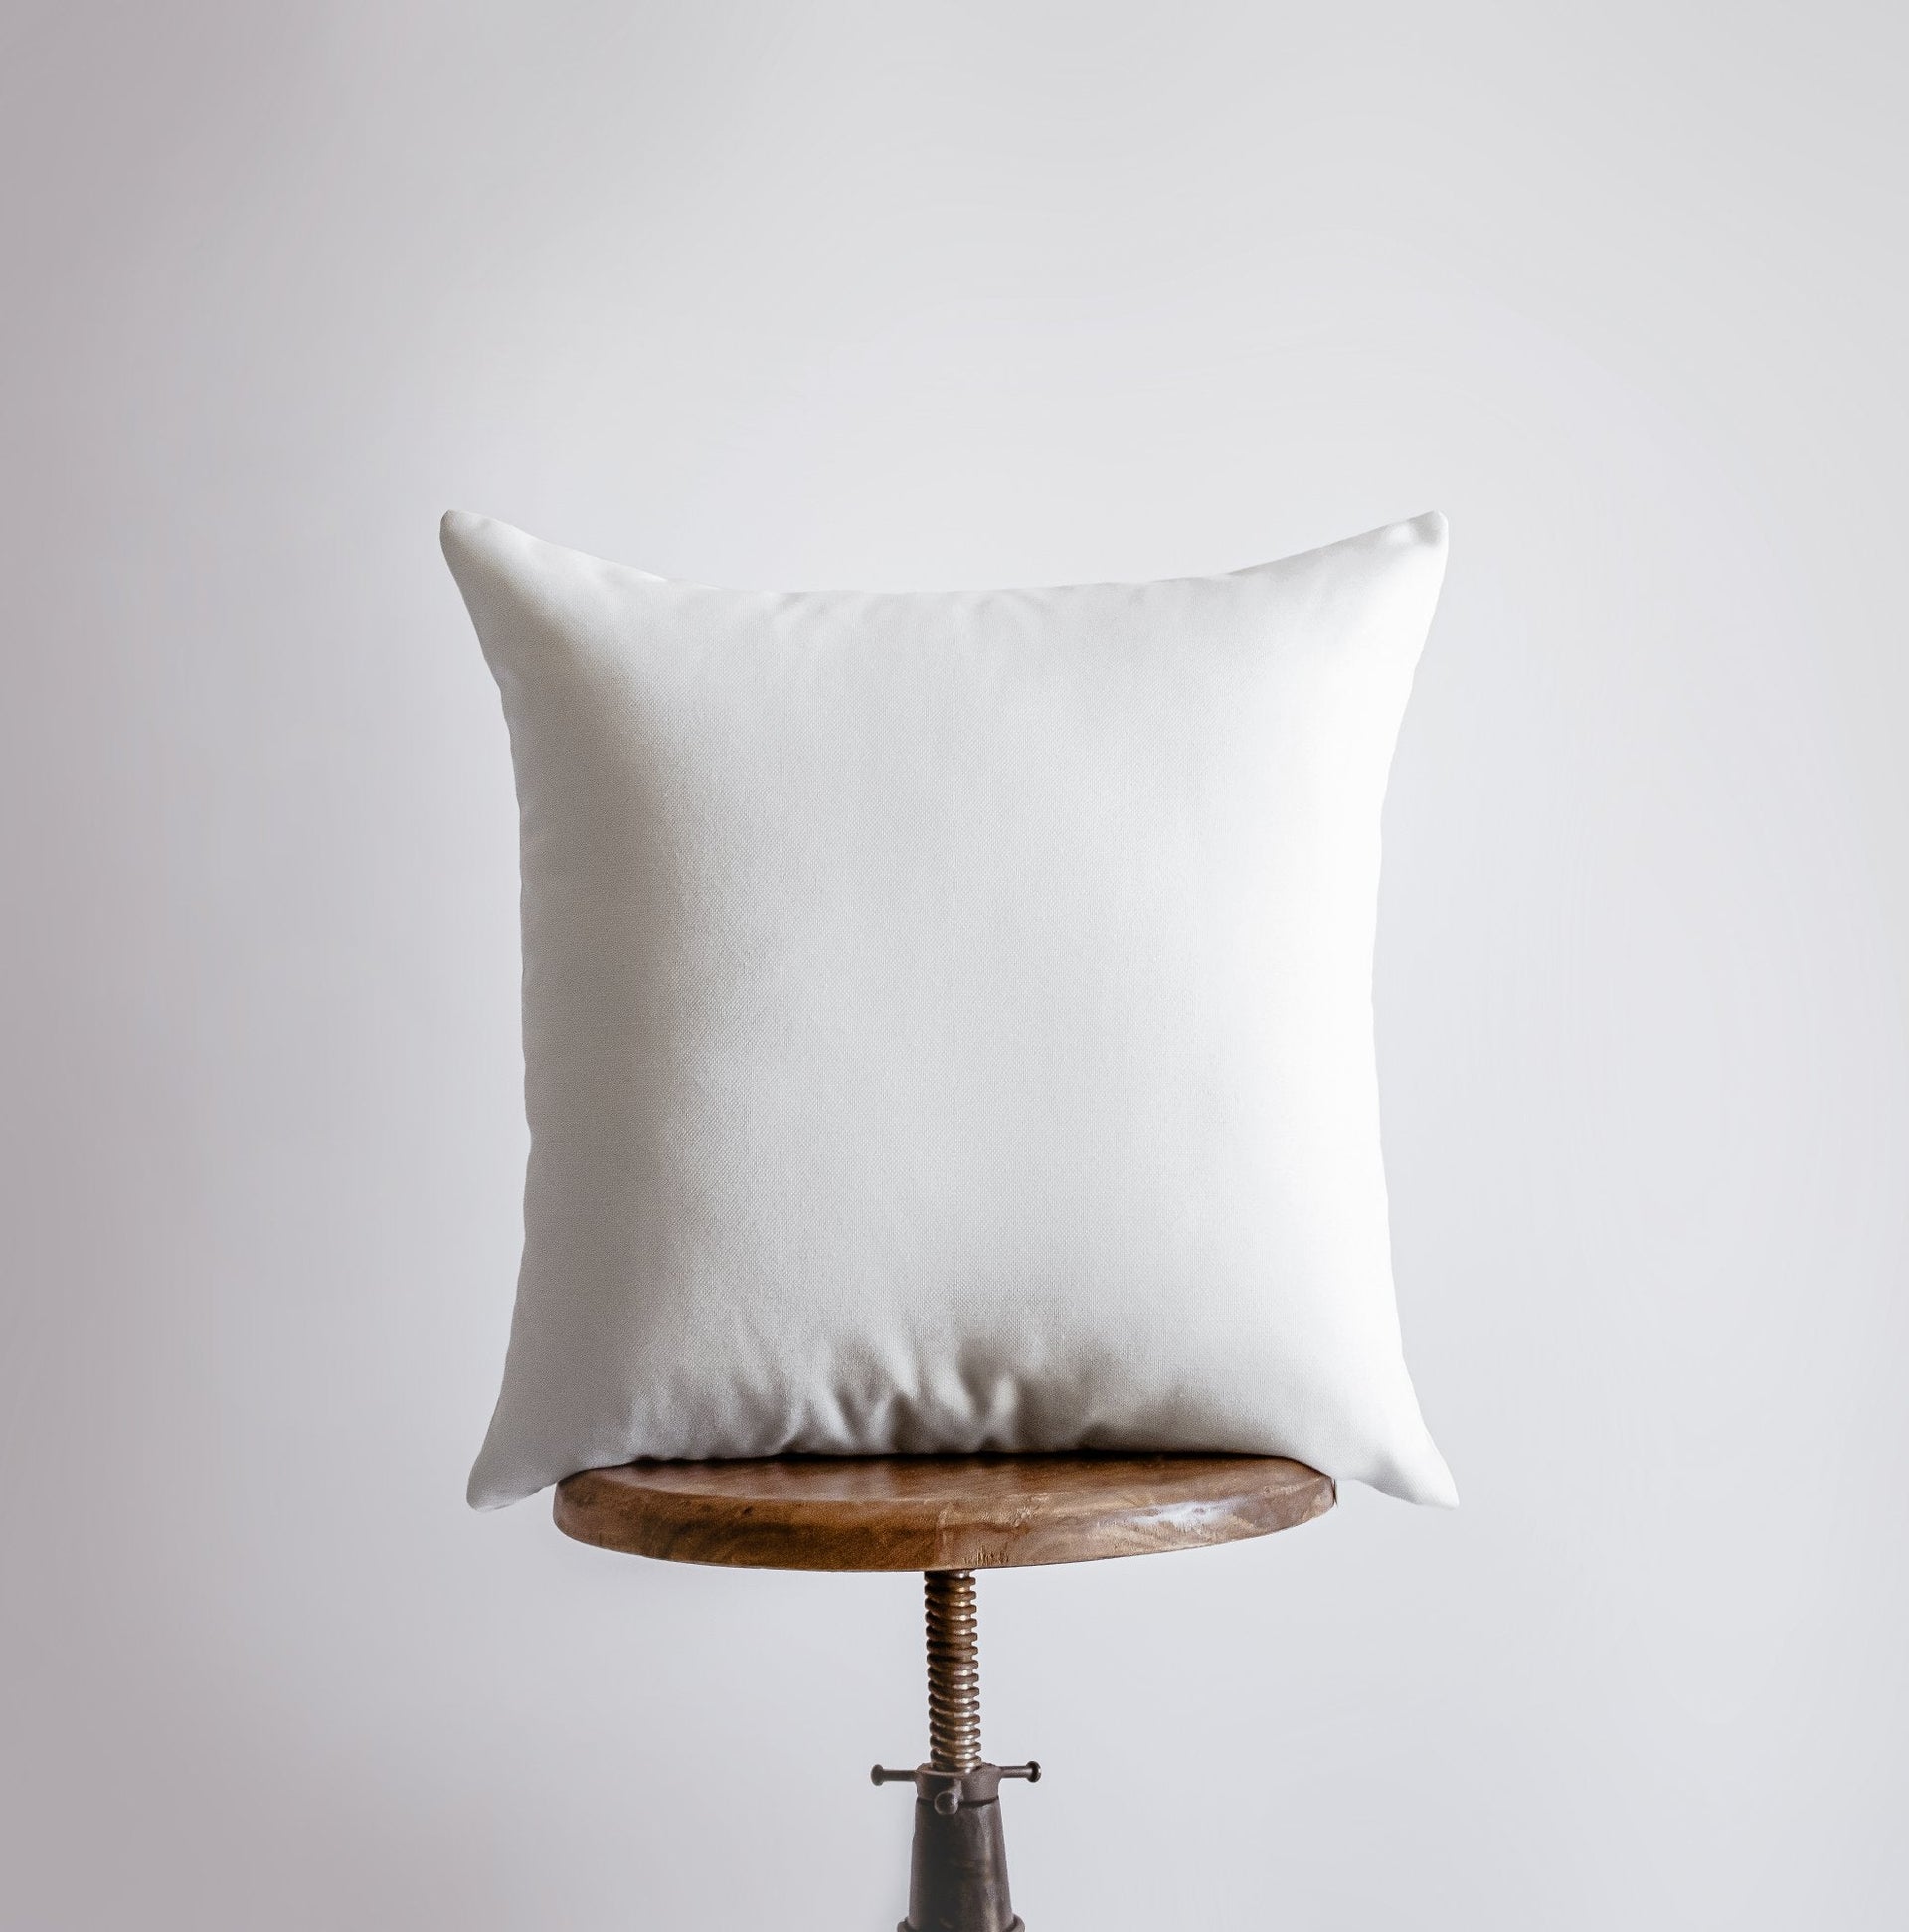 Let it Snow | Pillow Cover | Home Decor | Throw Pillow | Christmas - Mercantile Mountain